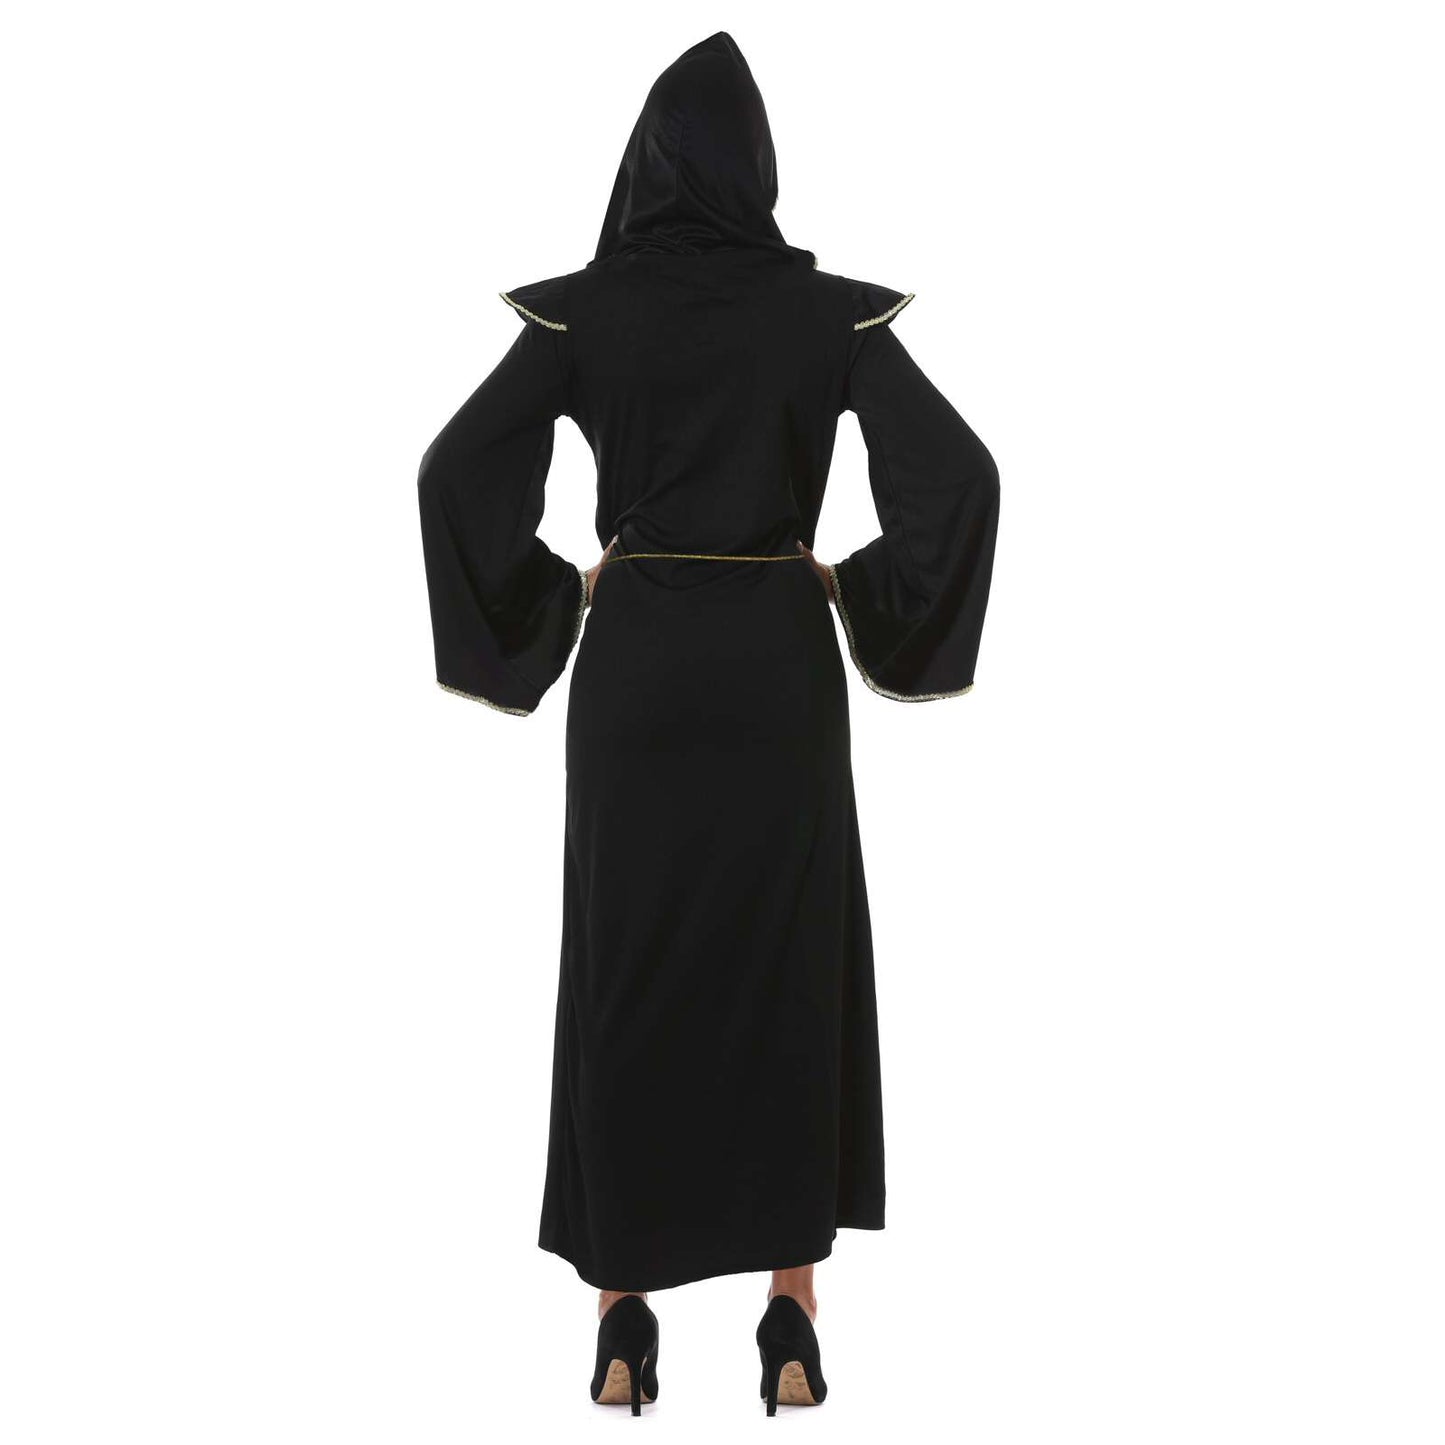 Dark Nun Costume